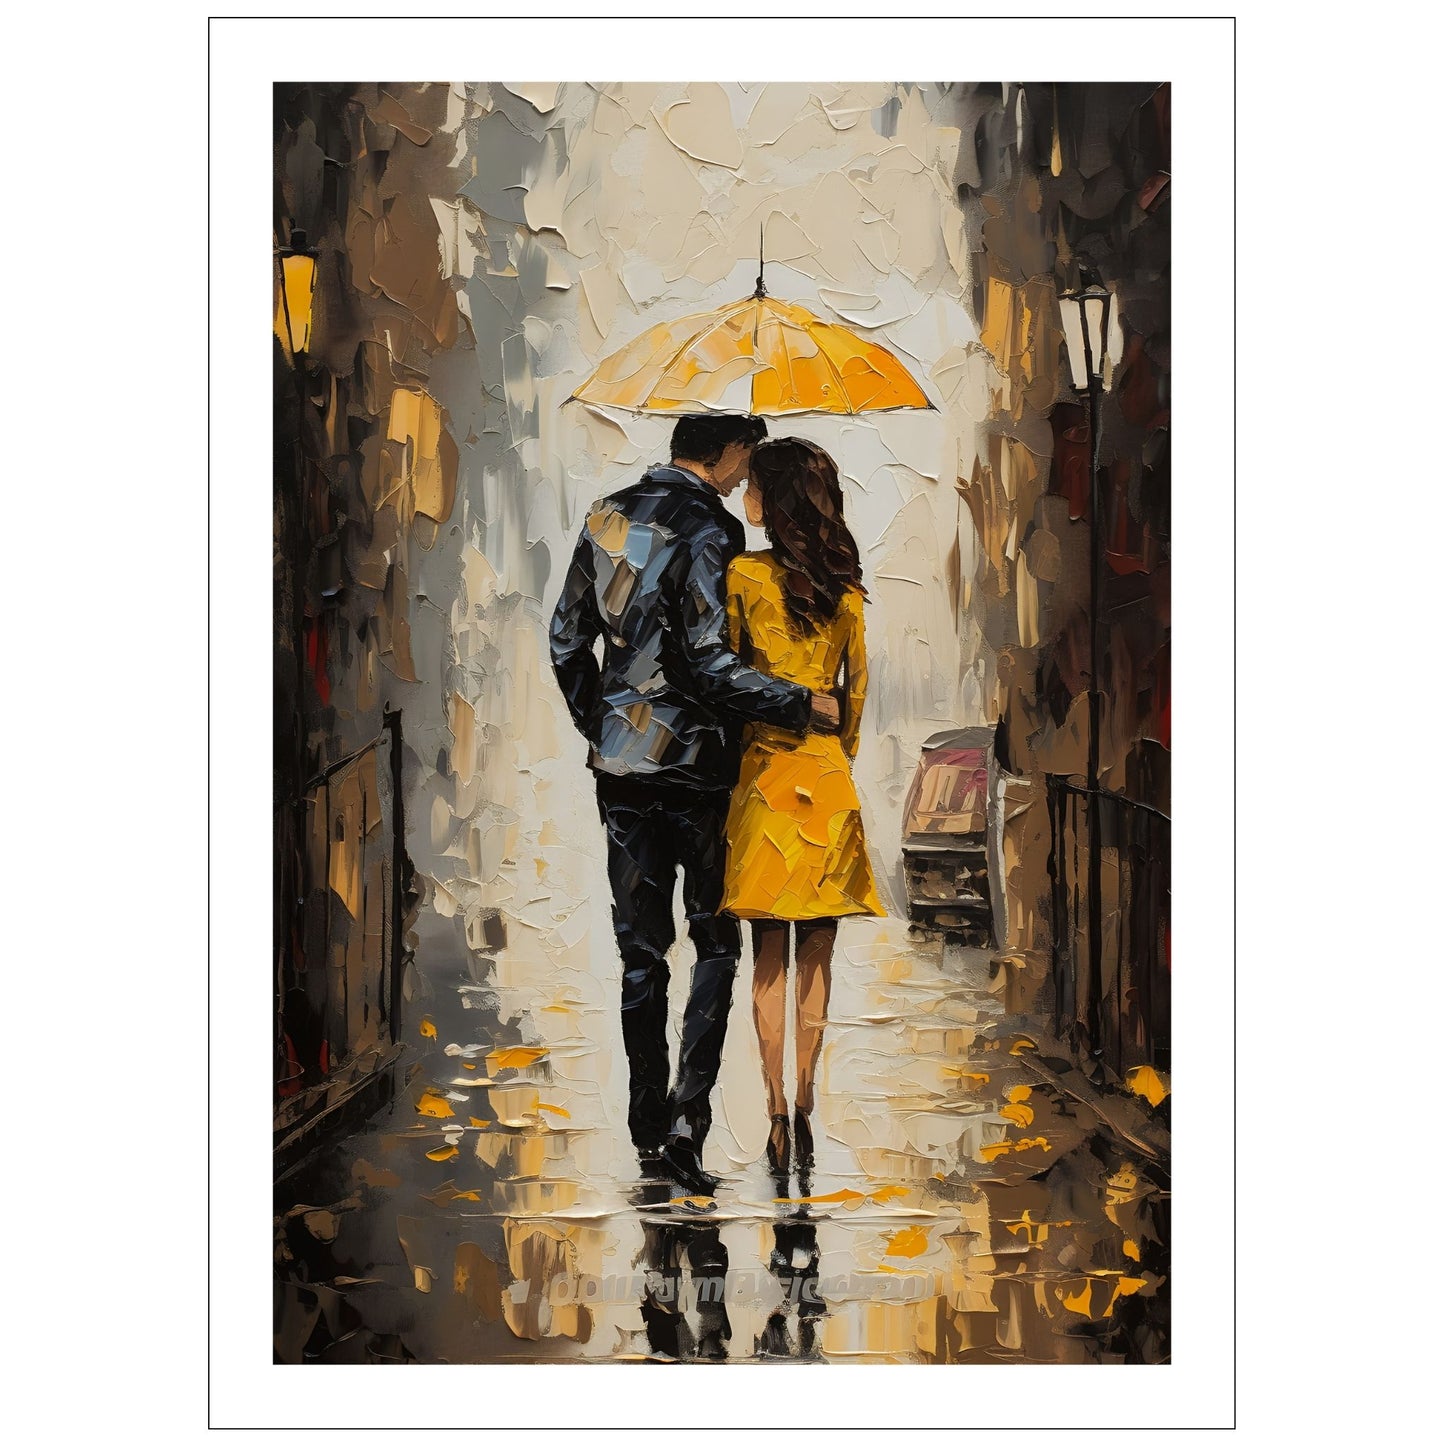 "Kjæresteparet under den gule paraplyen" - oljemaleri i grafisk trykk. Motiv av et par som går under en gul paraply langs en gate. Hun har en gul kåpe og han en sort dress. Motivet fås som plakat og lerret.